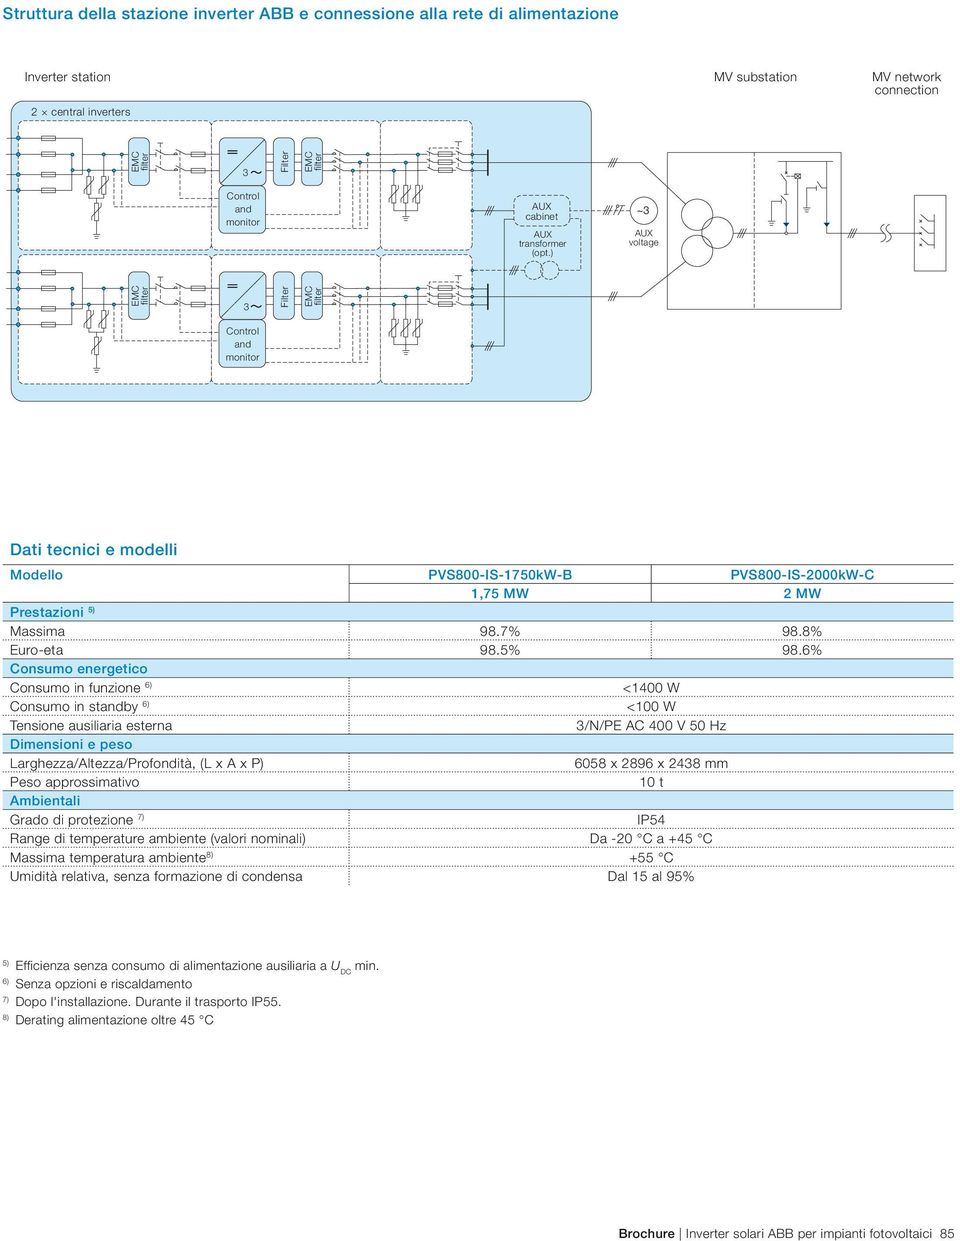 ) AUX voltage EMC filter 3 Filter EMC filter Control and monitor Dati tecnici e modelli Modello PVS800-IS-1750kW-B PVS800-IS-2000kW-C 1,75 MW 2 MW Prestazioni 5) Massima 98.7% 98.8% Euro-eta 98.5% 98.